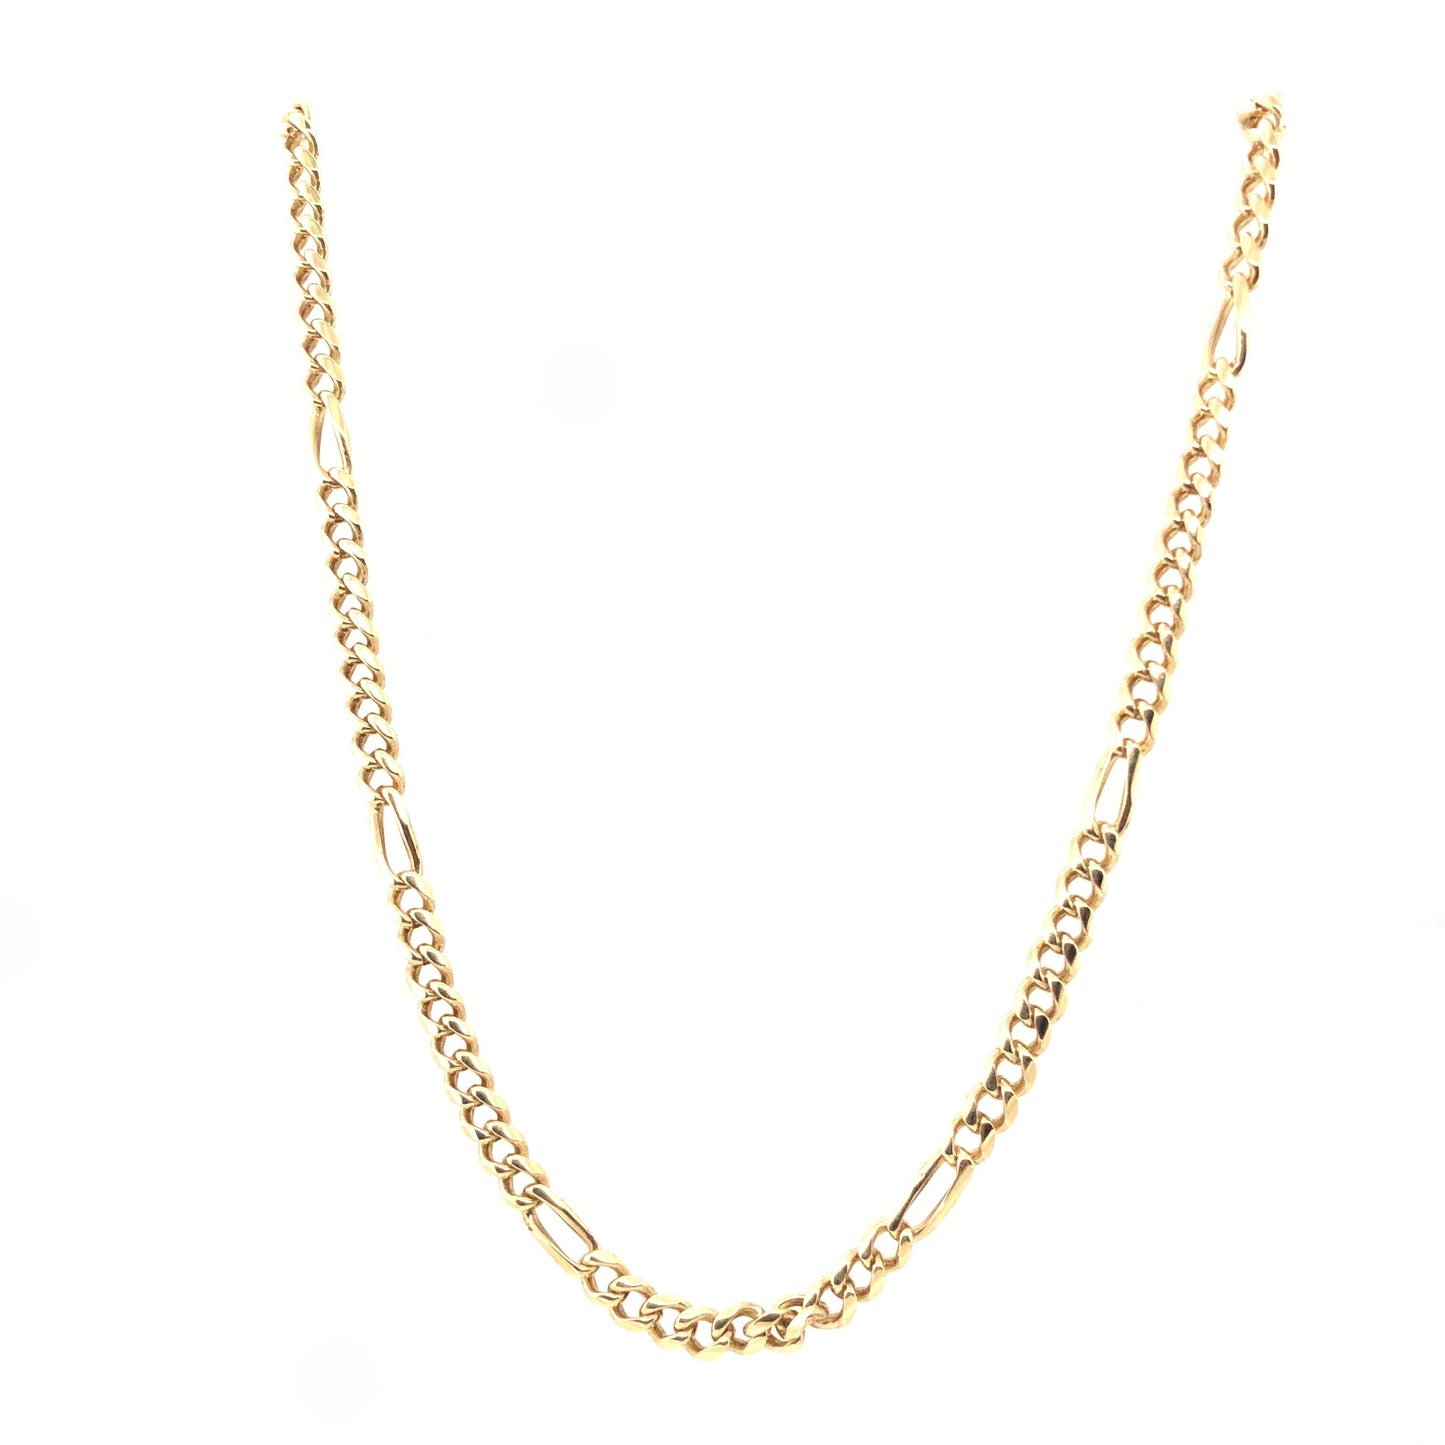 Halskette Figaro Gold 585 / 14k